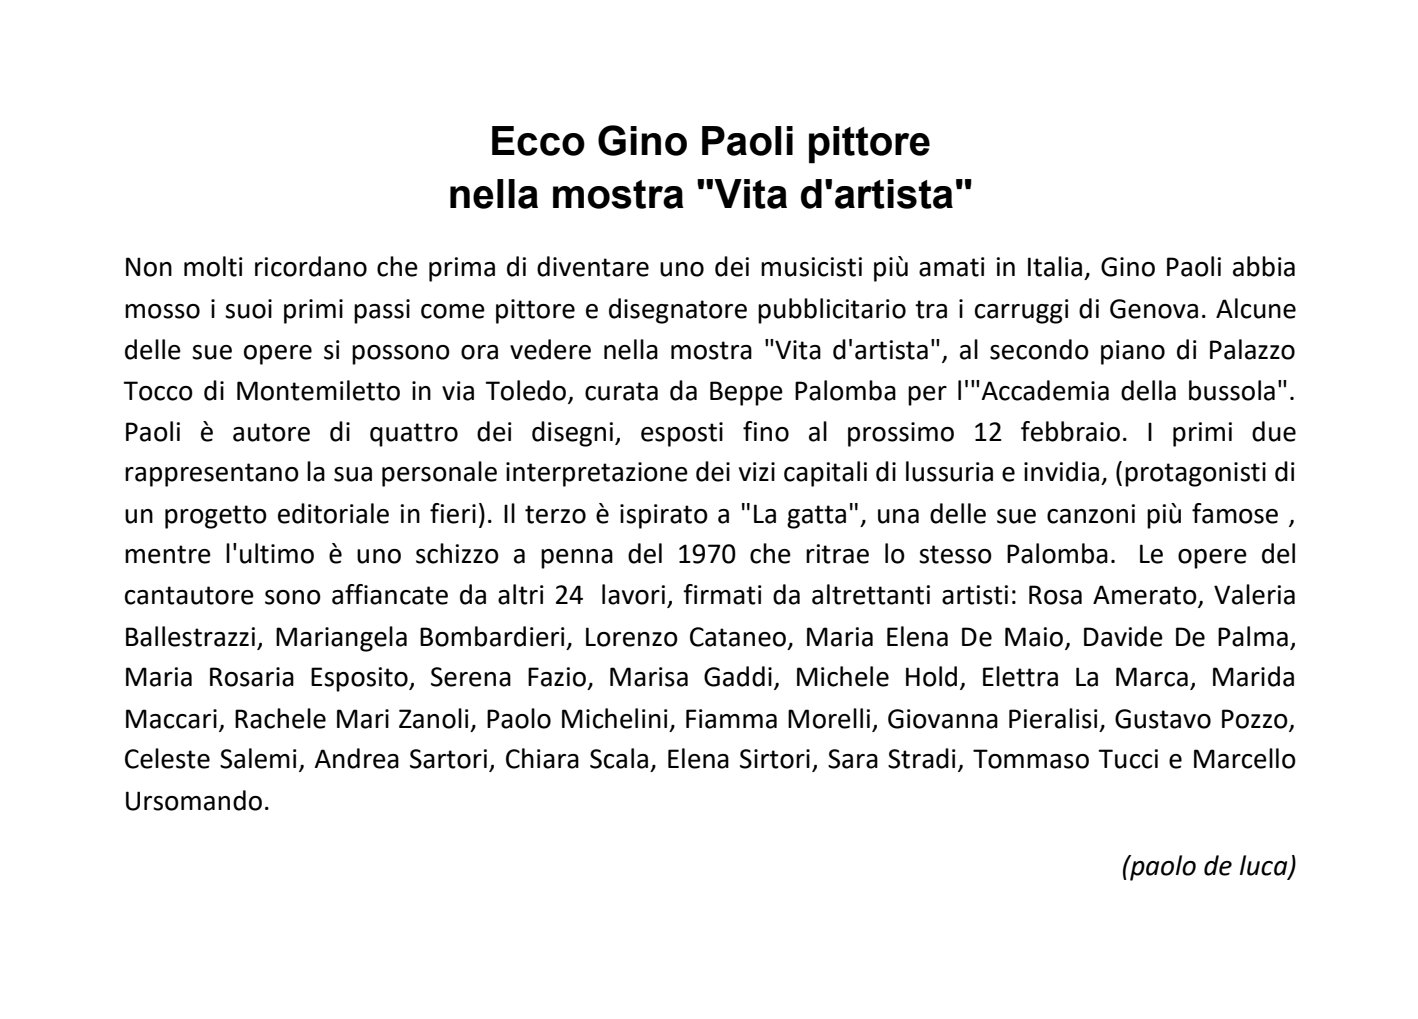 Articolo su Repubblica.it - Mostra Collettiva - Vita d'artista - Omaggio a Gino Paoli - Napoli 2013